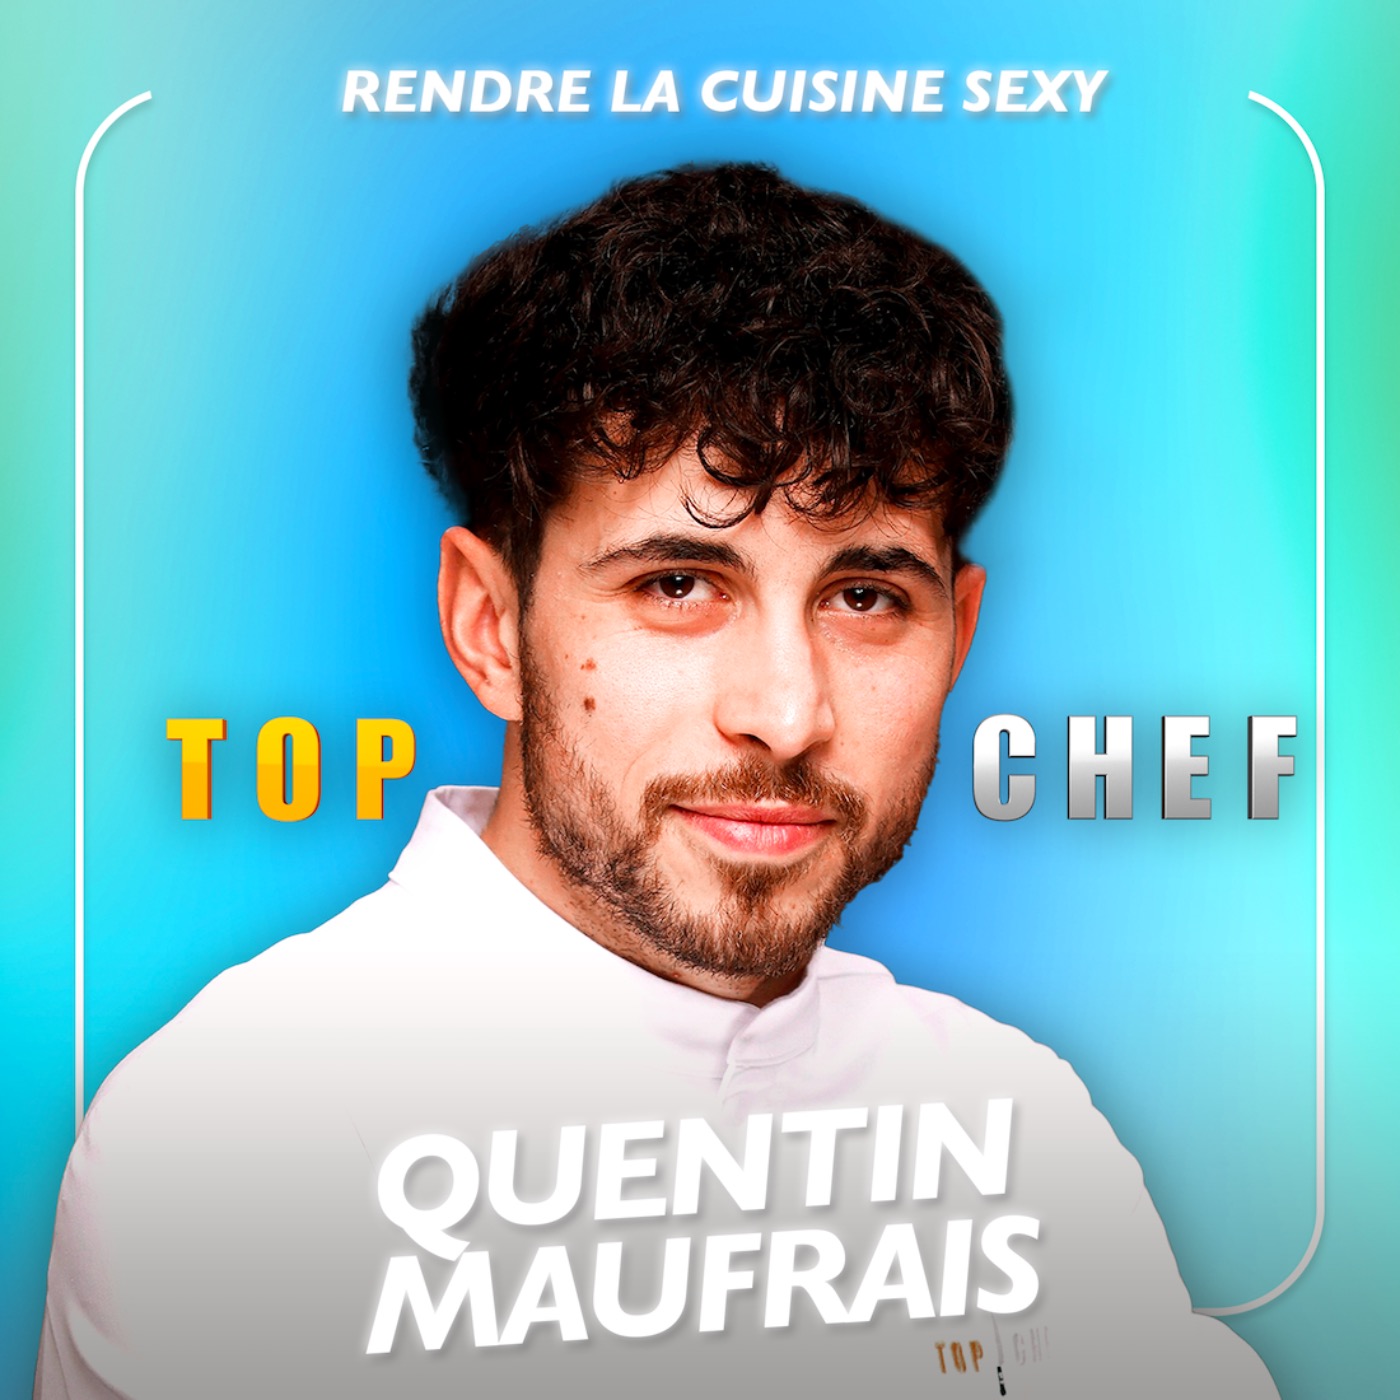 Rendre la cuisine sexy avec le candidat de Top Chef Quentin Maufrais